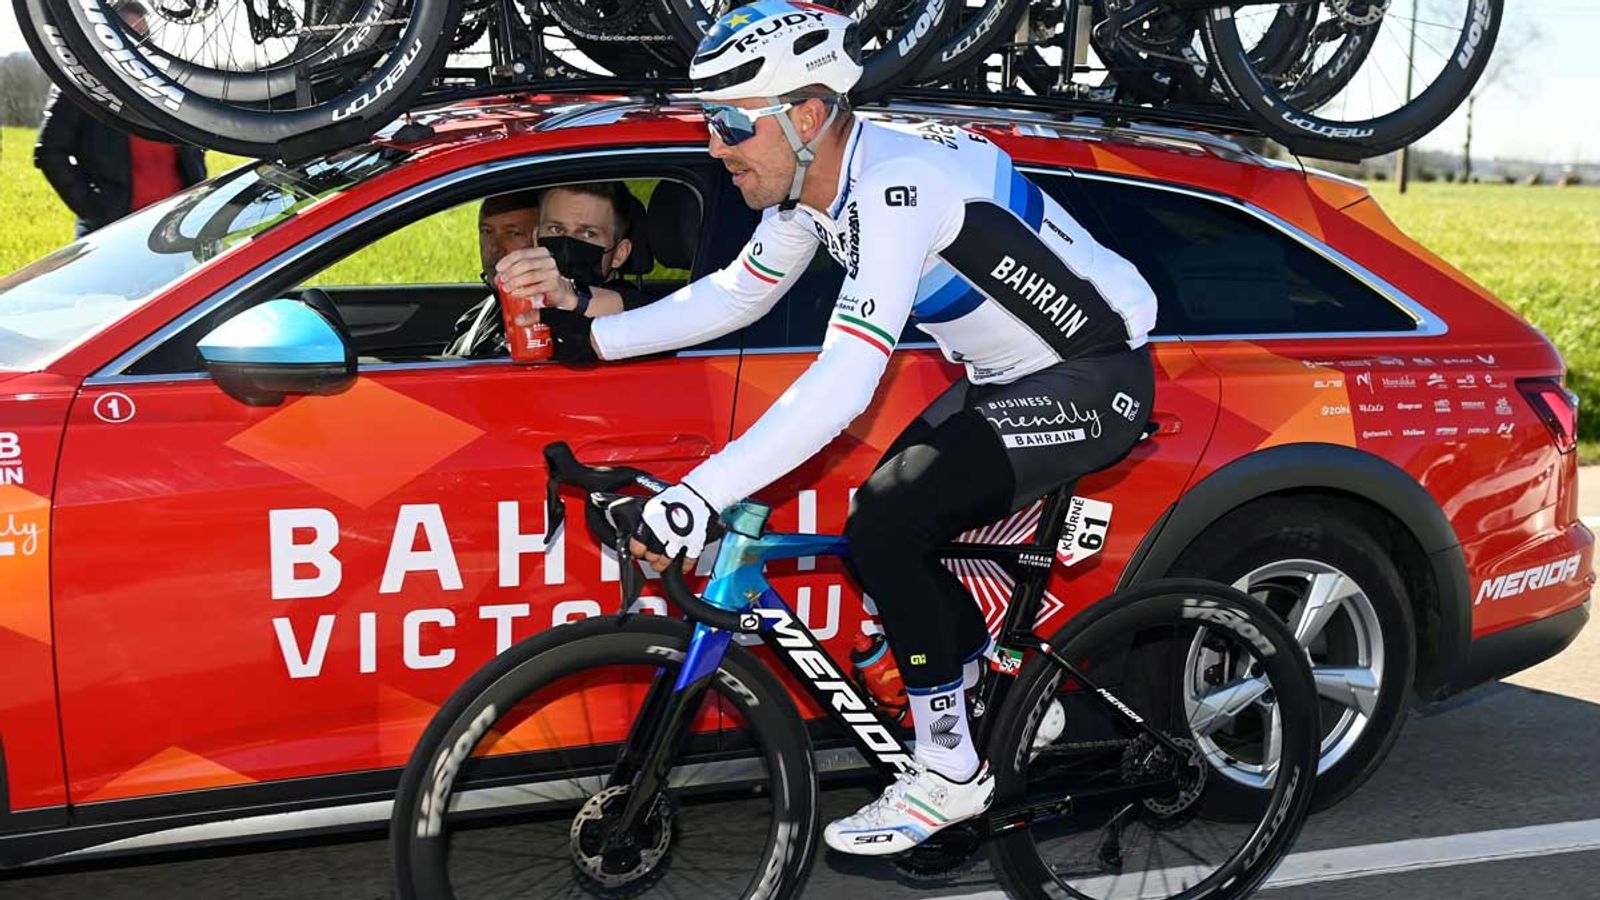 Notizie sul ciclismo: Sonny Colbrelli riceve il defibrillatore dopo il crollo |  notizie sul ciclismo